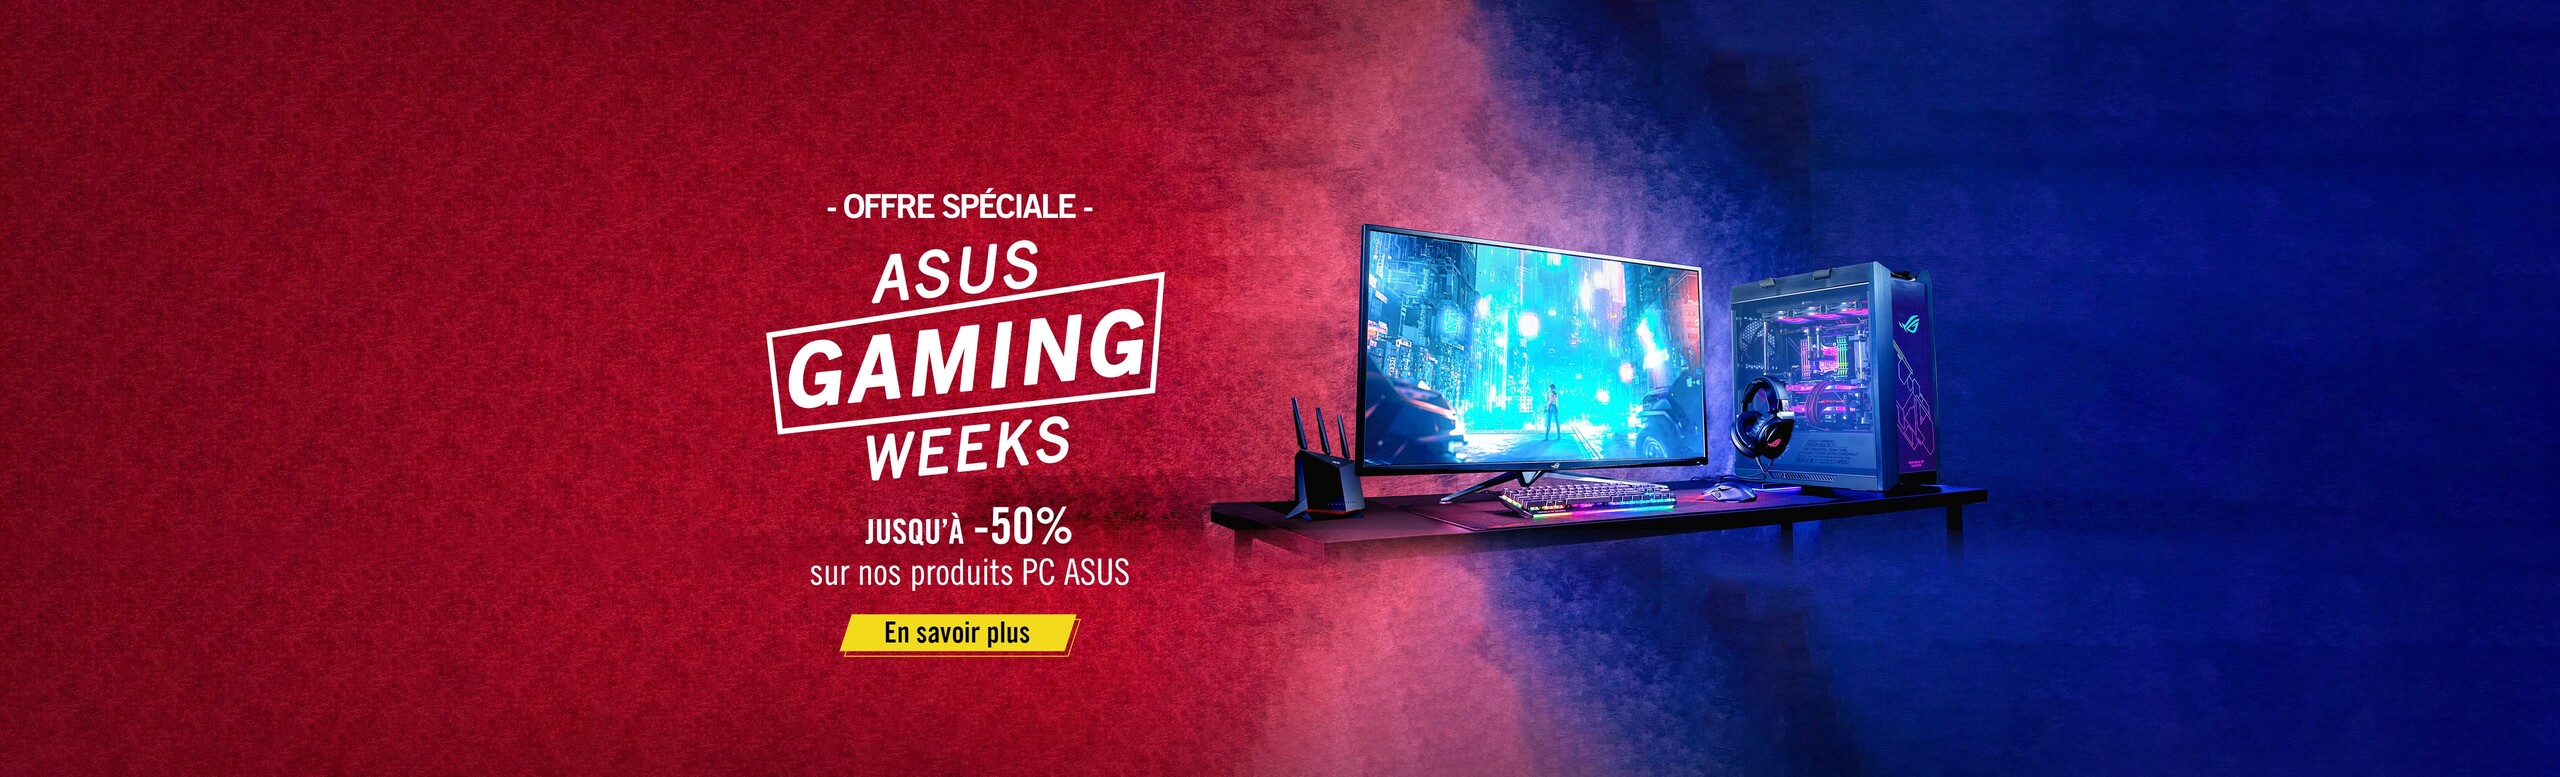 ASUS Gaming weeks